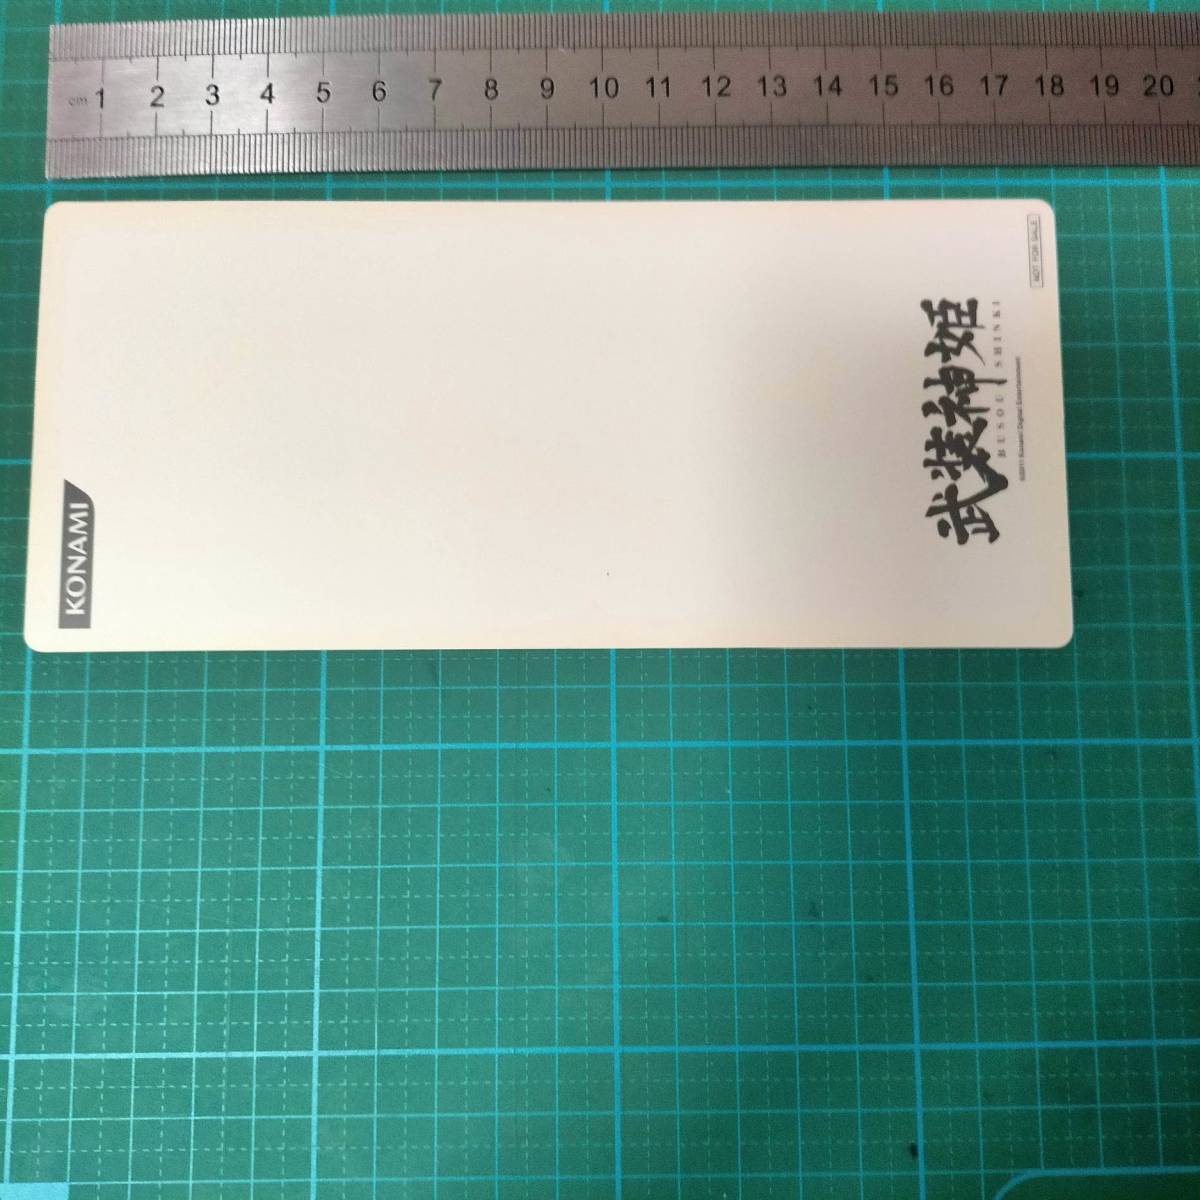  привилегия ограничение не продается Buso Shinki в натуральную величину книжка маркер (габарит) все bell n редкость новый товар рекламная закладка rare BUSOU SHINKI OORBELLEN bookmarker CARD limited